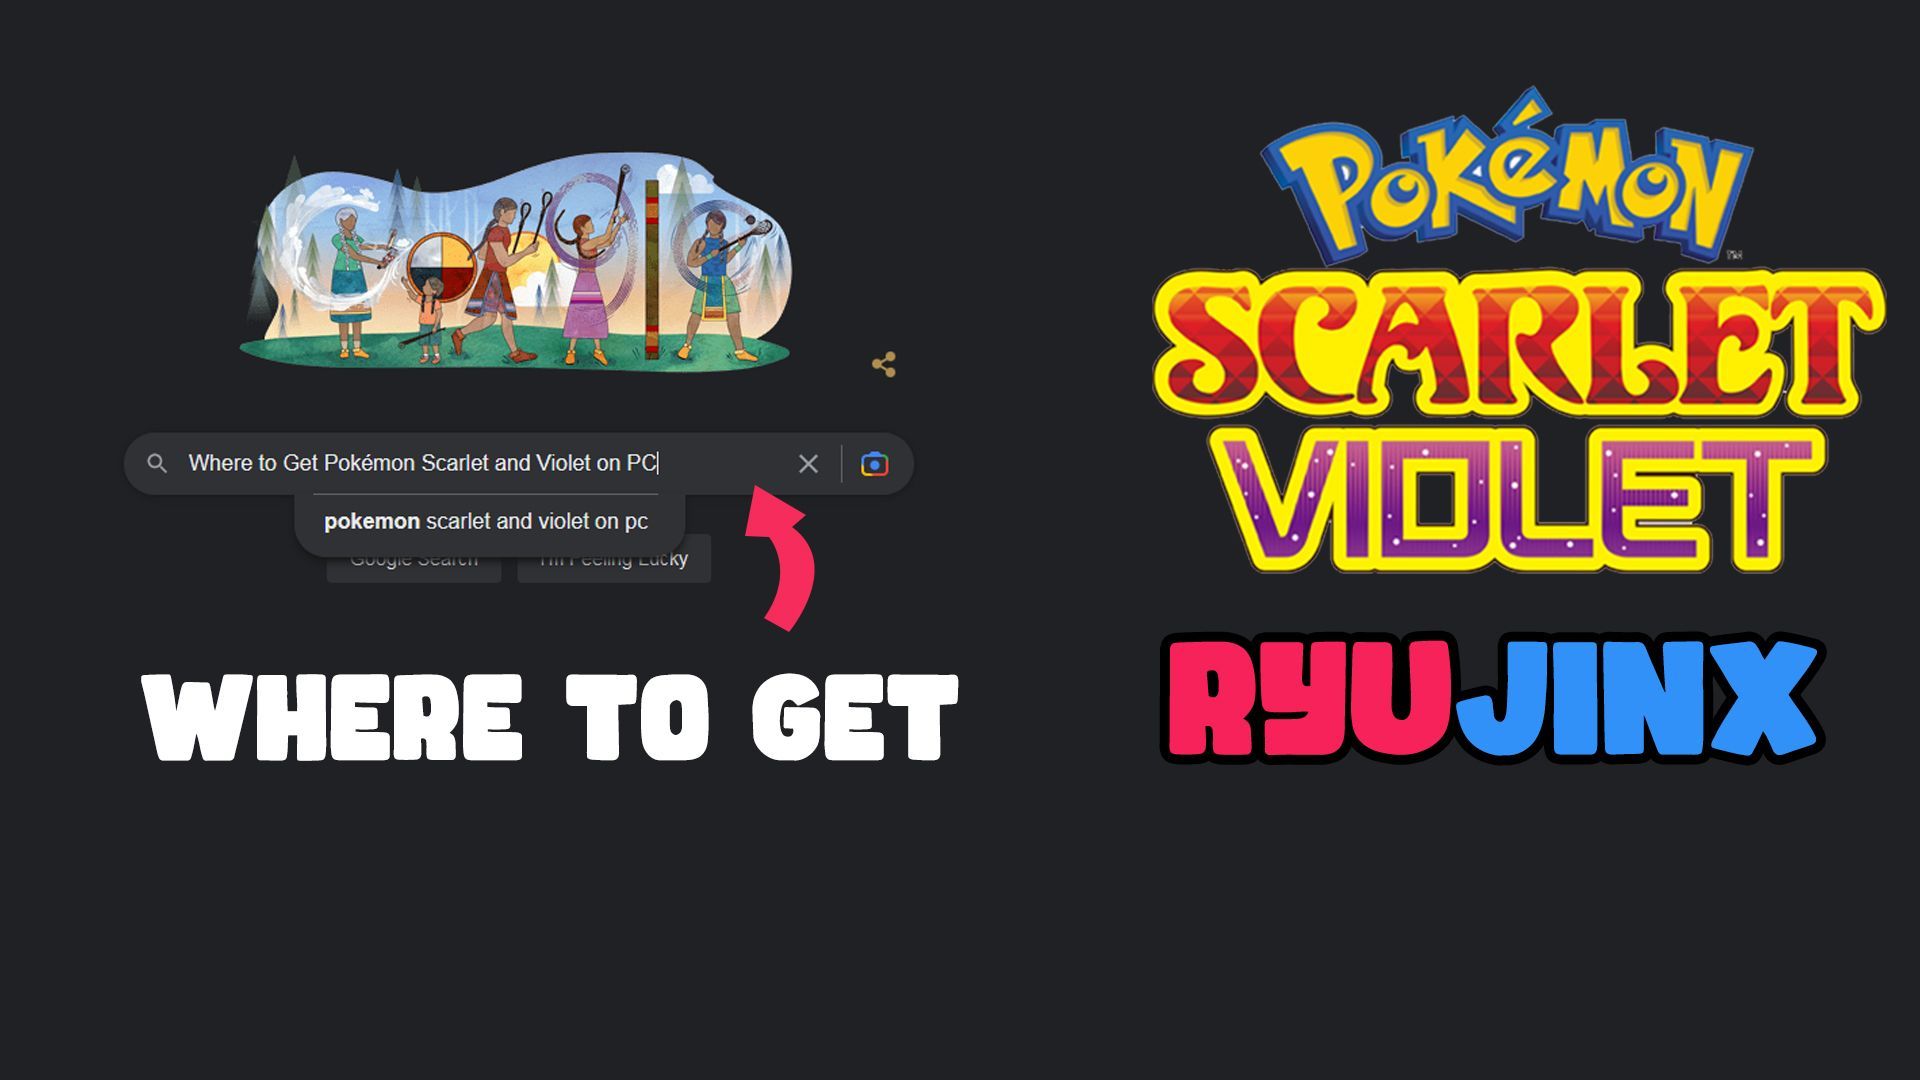 How to Play Pokémon Scarlet & Violet on PC - Ryujinx Switch